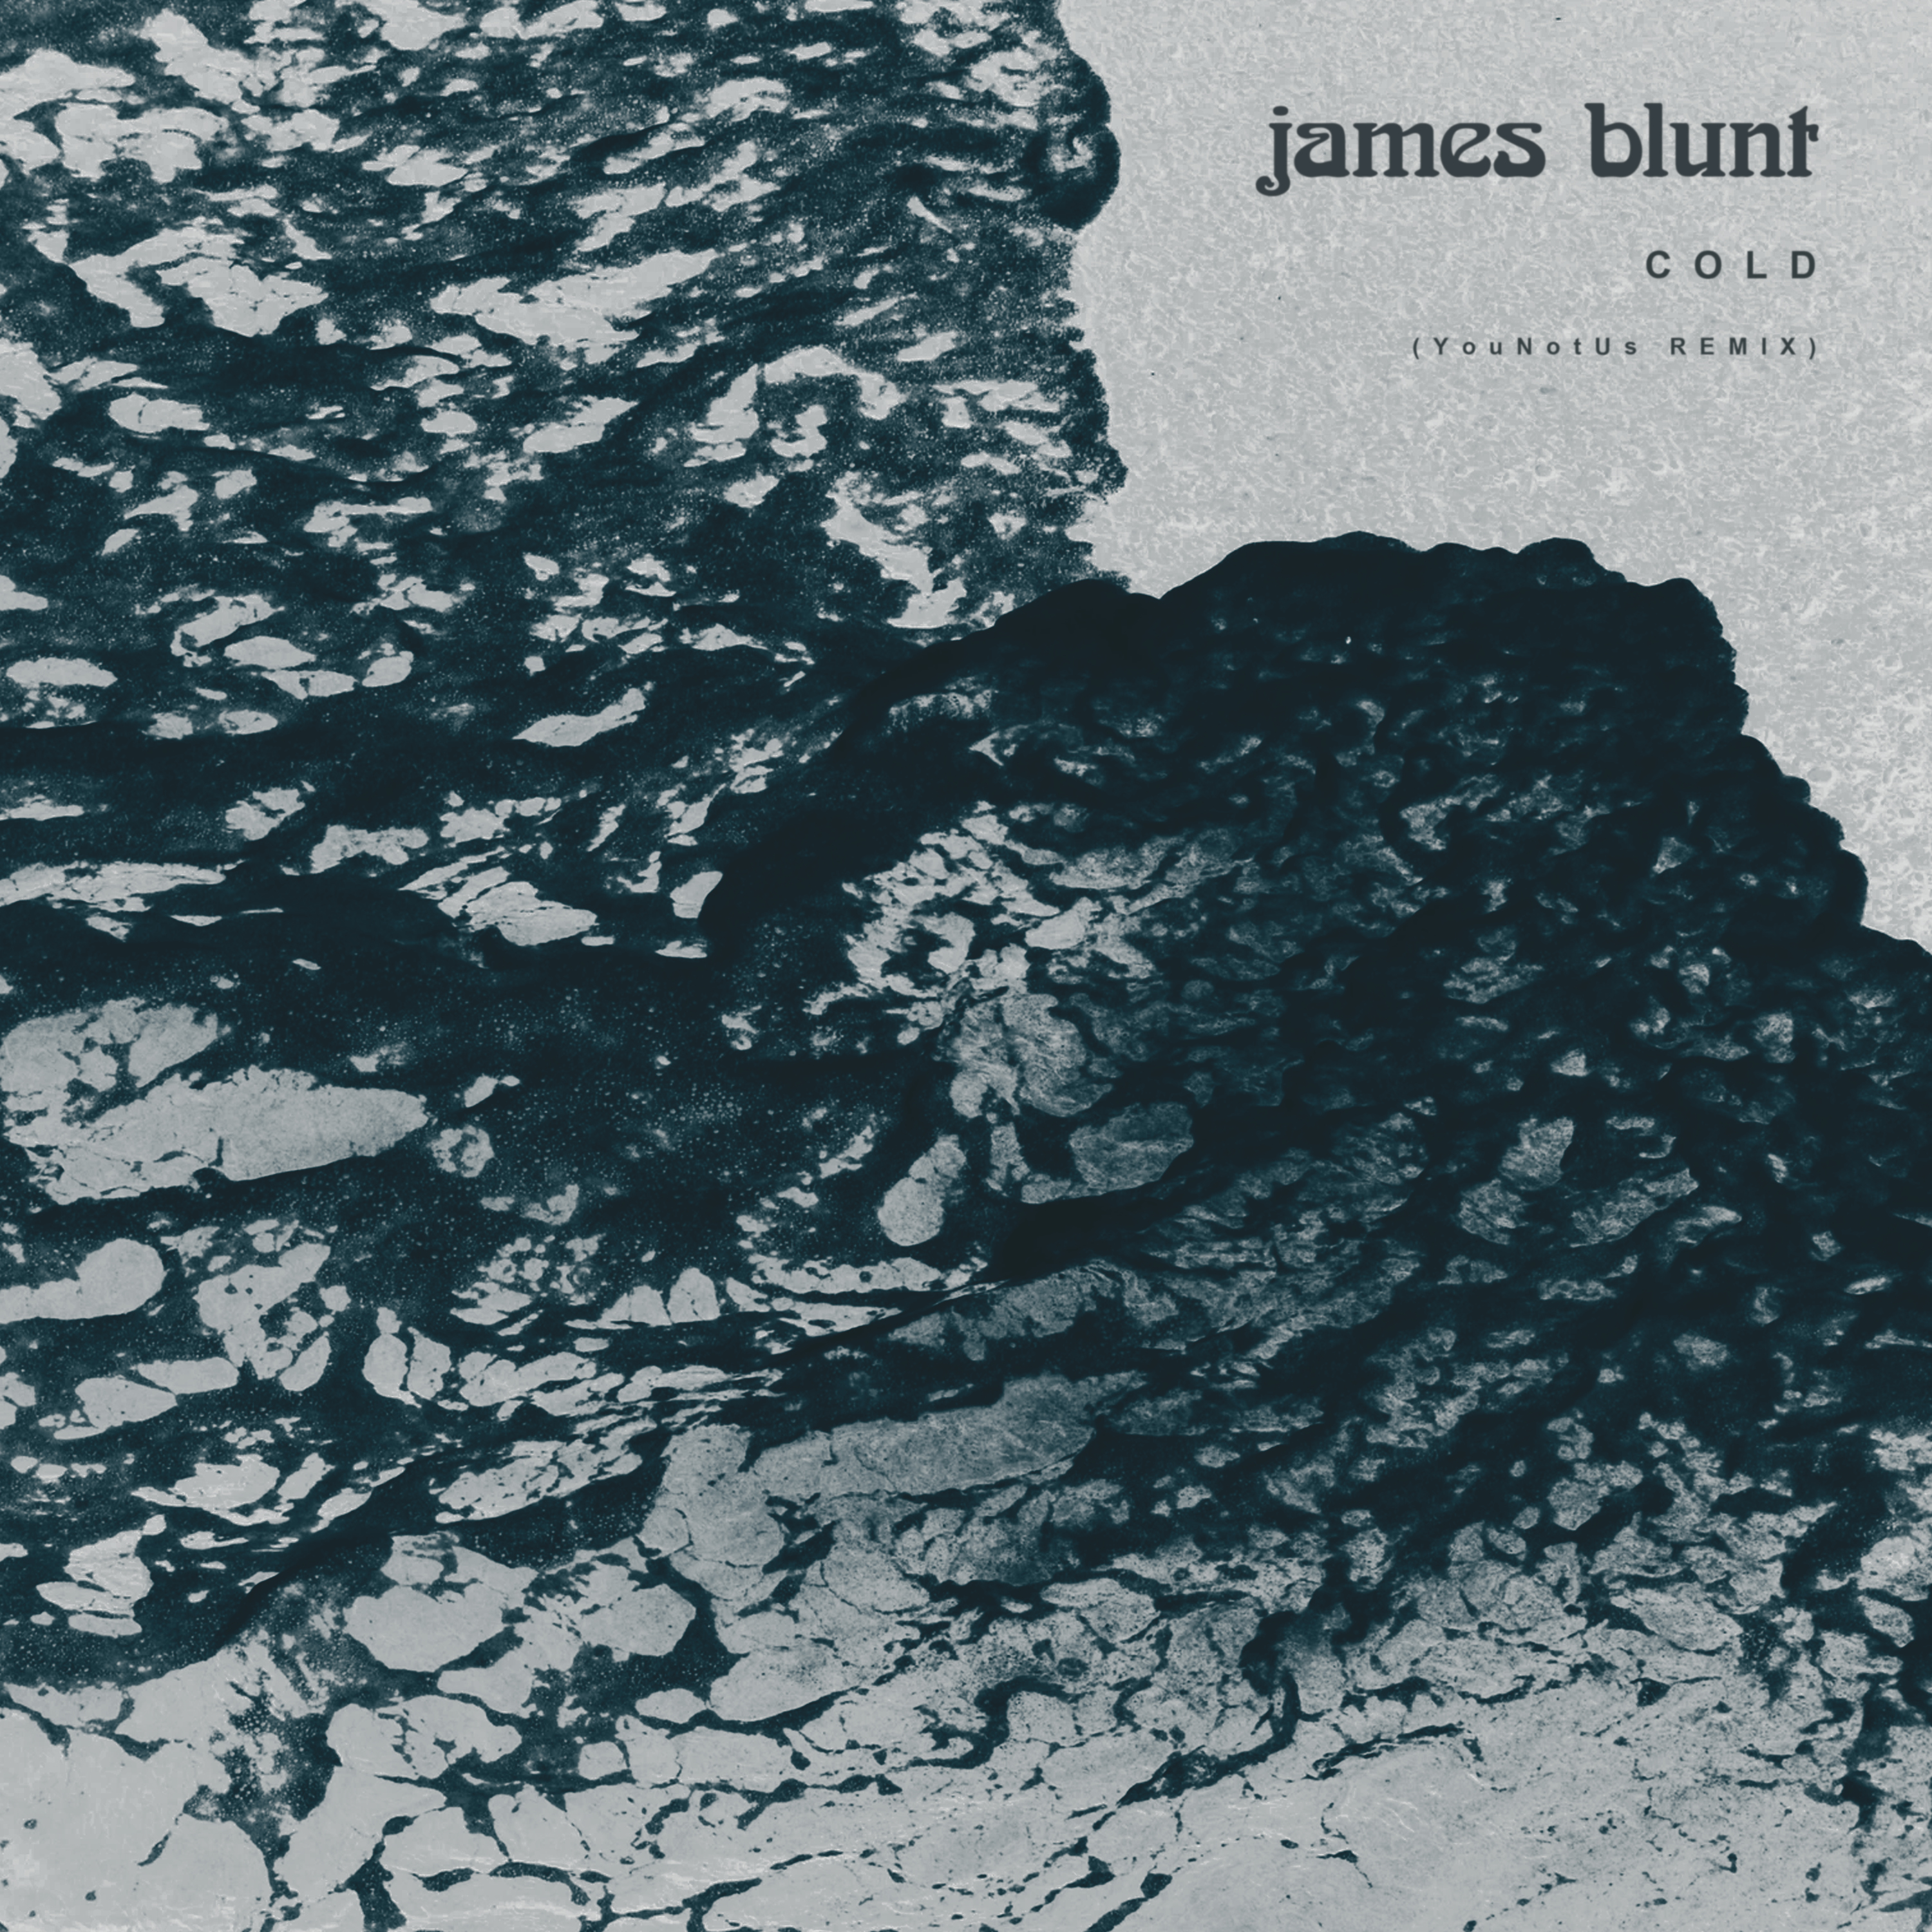 James cold. James Blunt - Cold. James Blunt альбомы. Cold обложки альбомов.